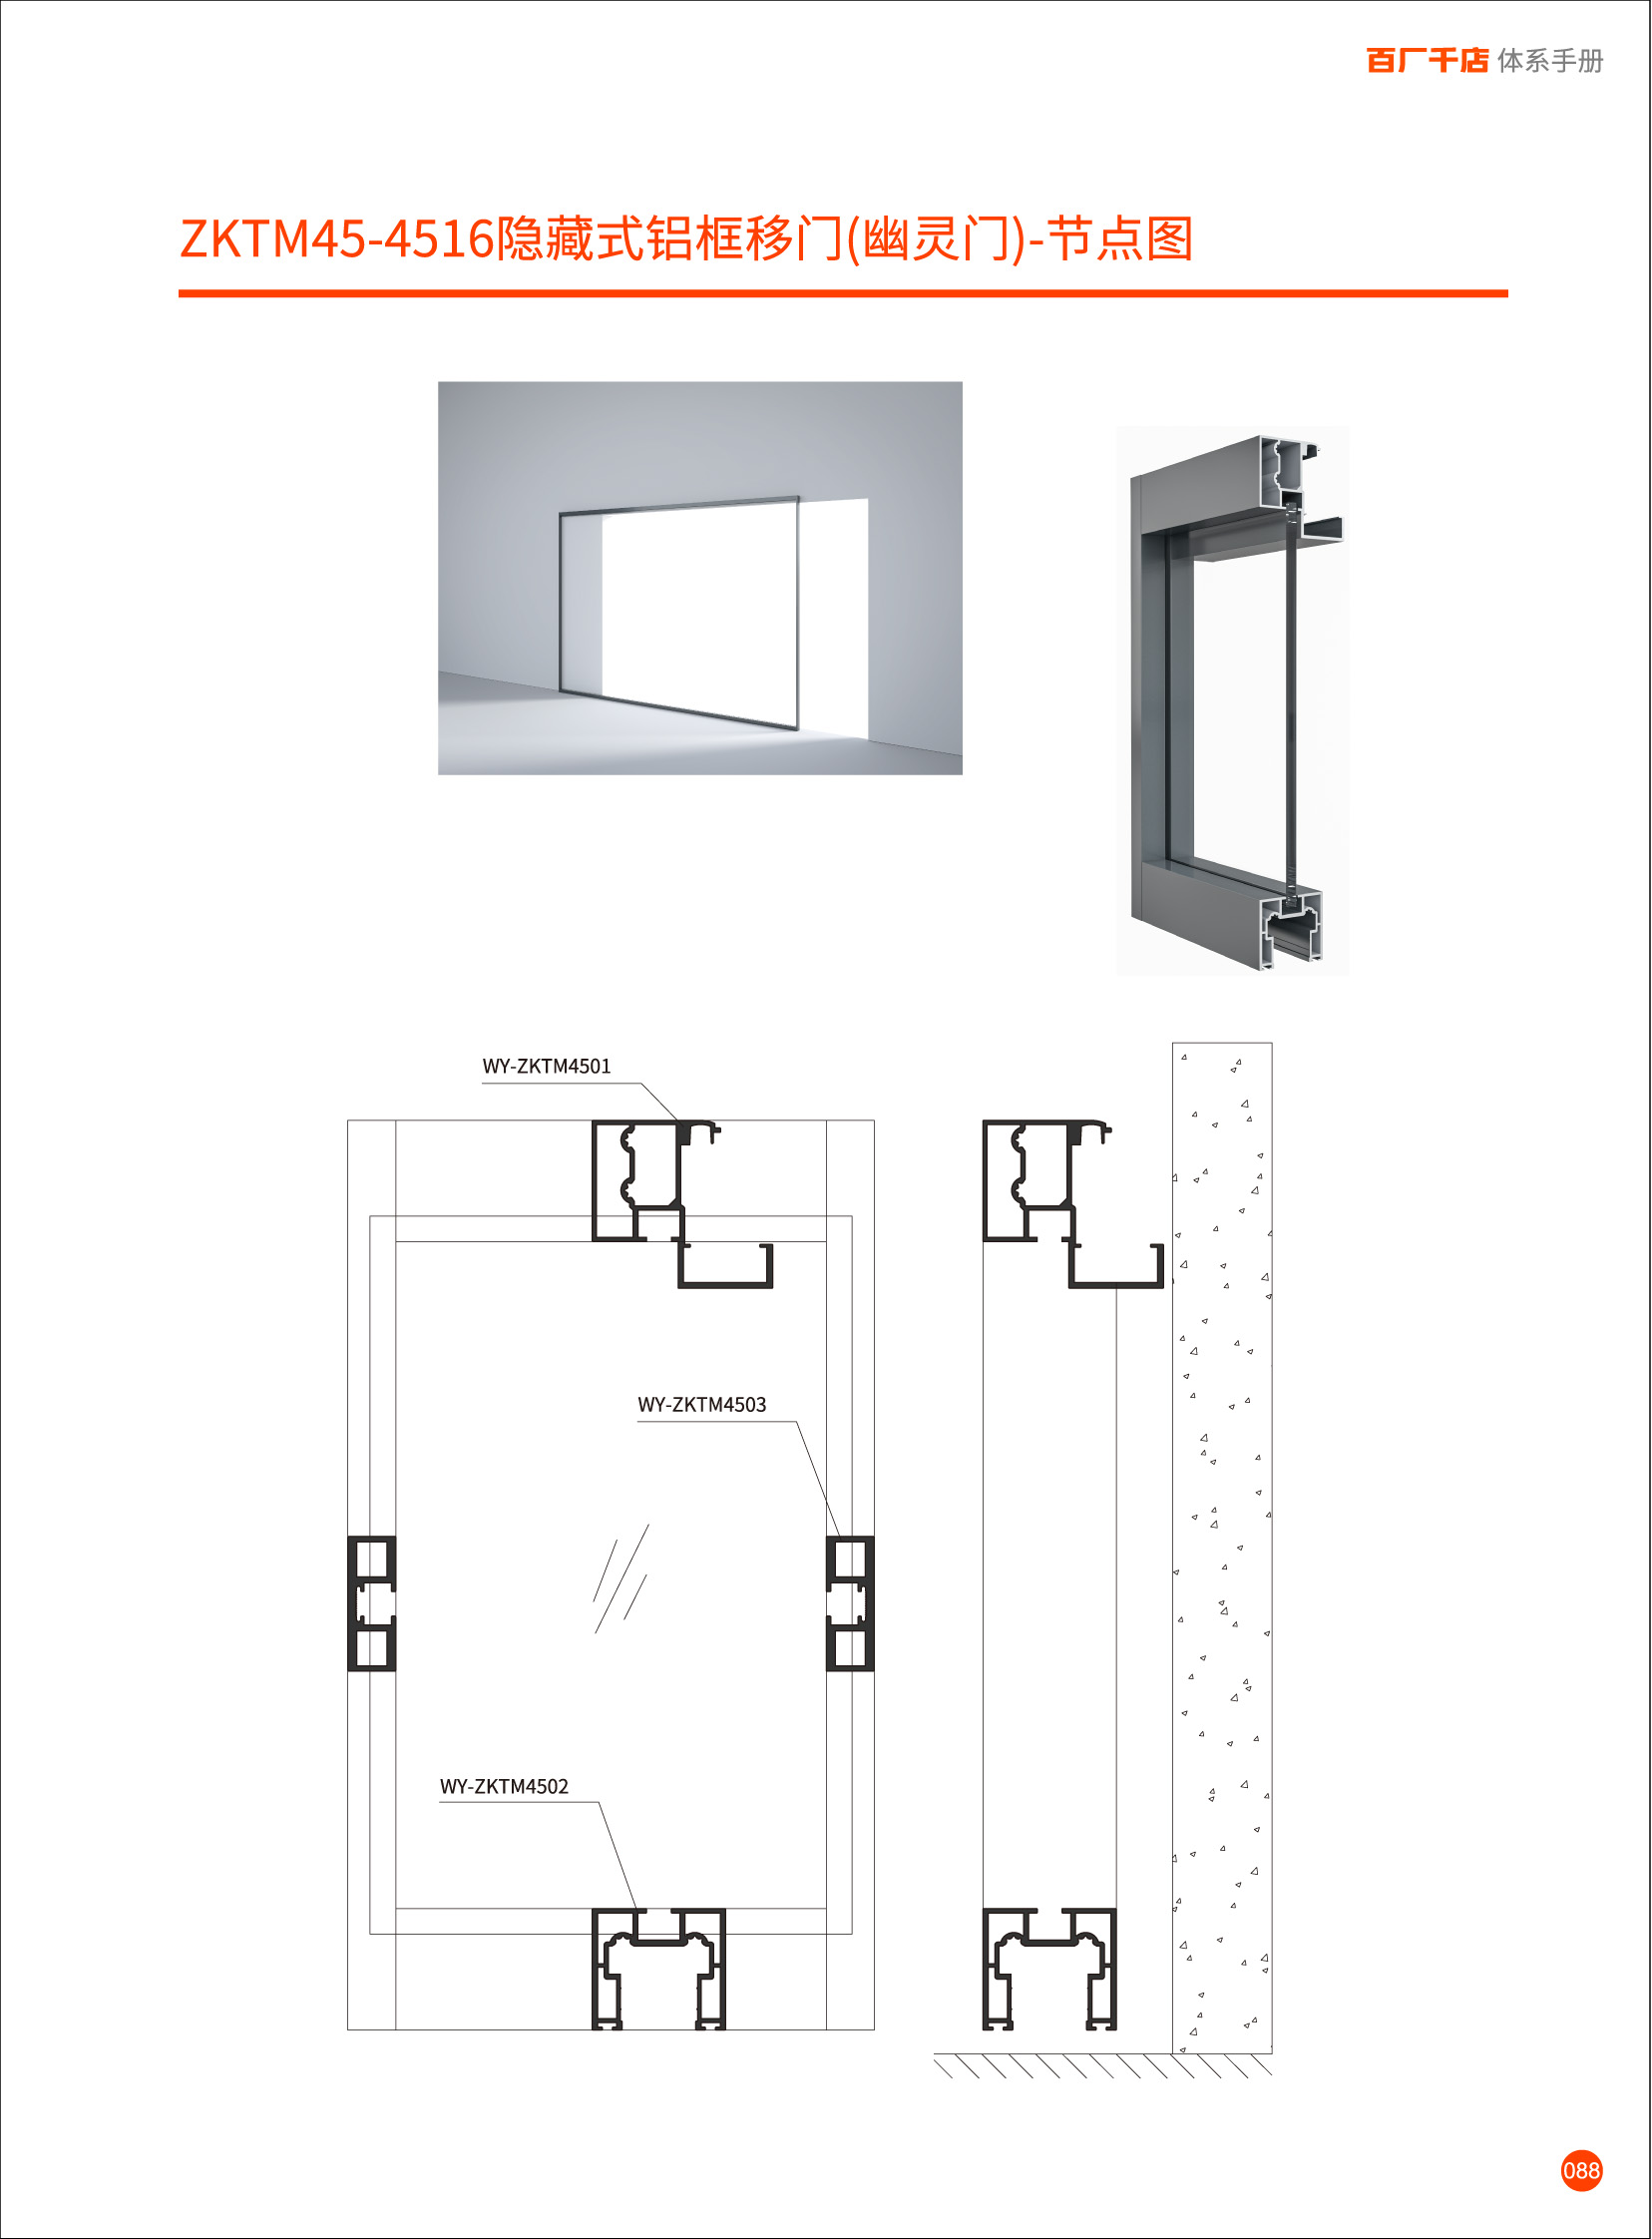 Zktm45-4516 Concealed aluminum frame sliding door (Ghost door)